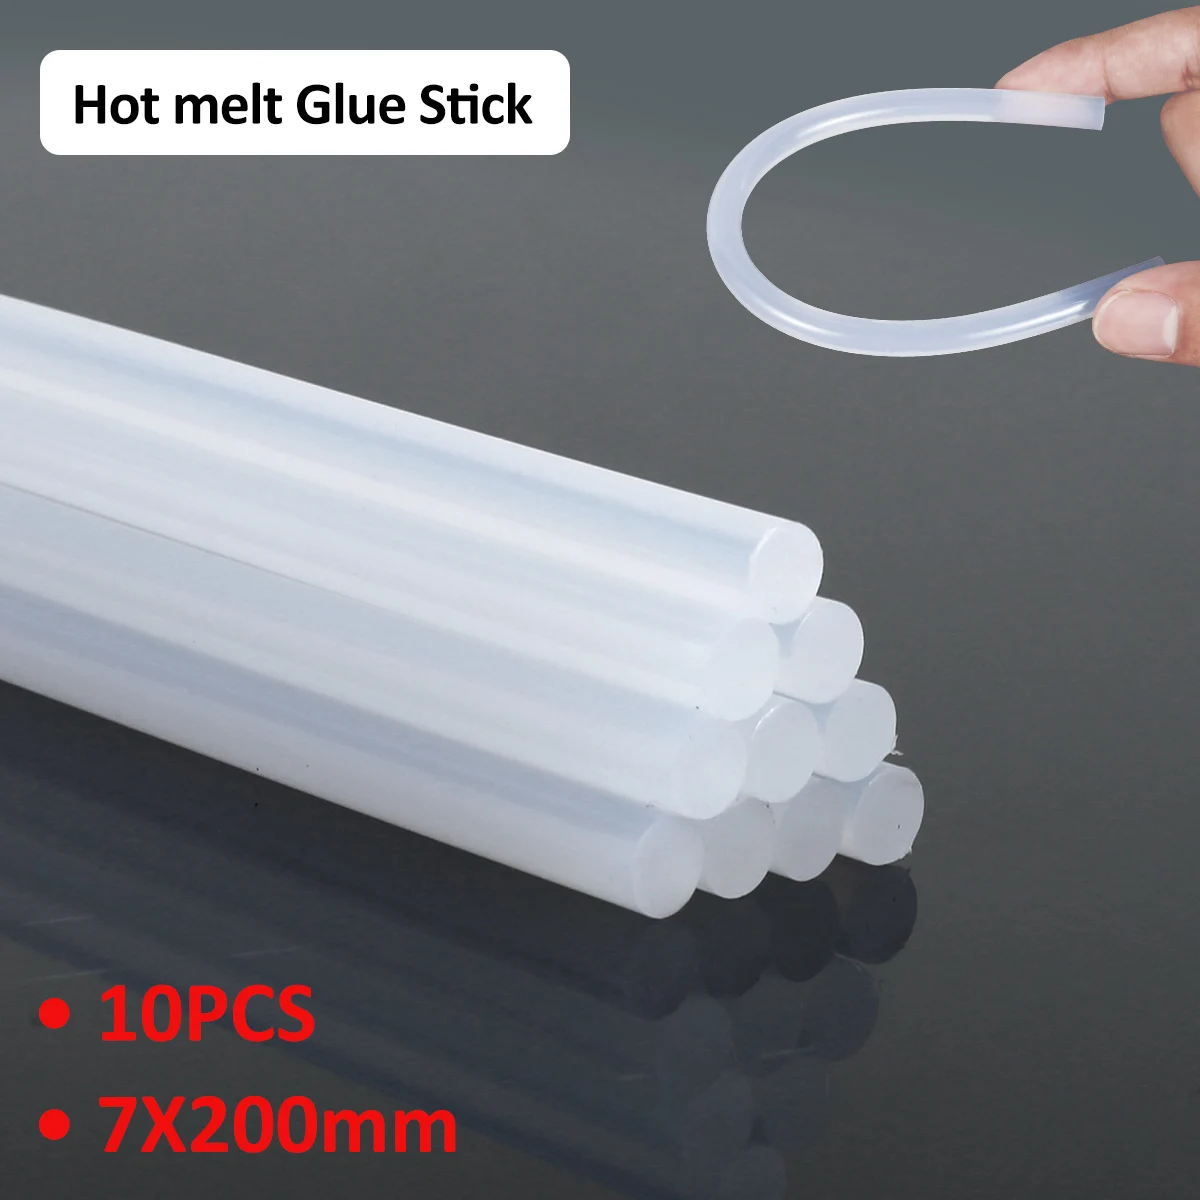 

10Pcs Glue Stick Hot Glue Sticks 7X200mm Transparent Hot-Melt Tool Glue Sticks Clear Hot Glue Machine Sticks Durable Premium